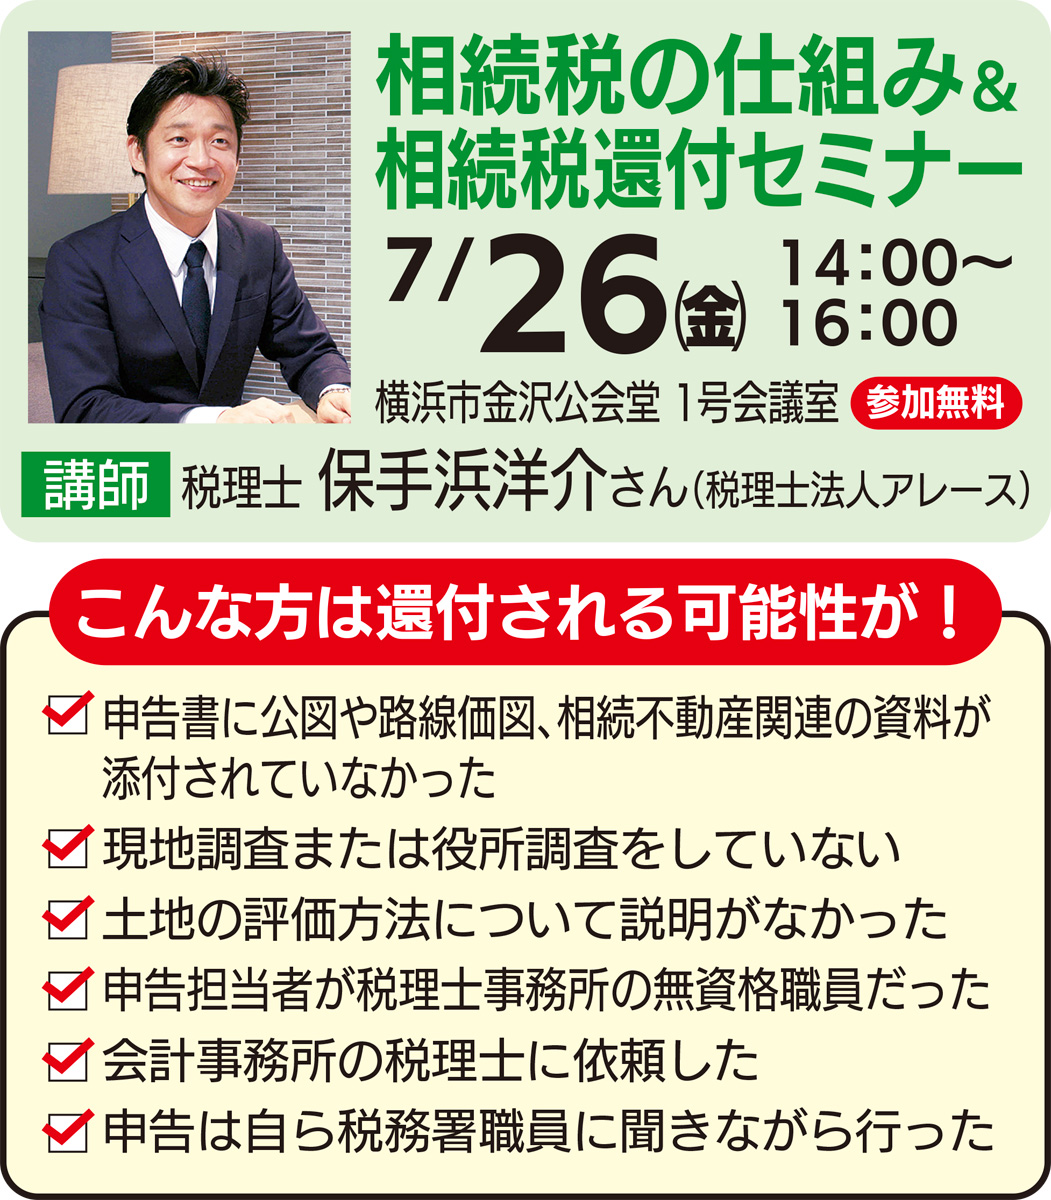 京急すまいるステーション 払い過ぎ相続税は取り戻せる 7月26日、金沢公会堂でセミナー 京急すまいるステーション